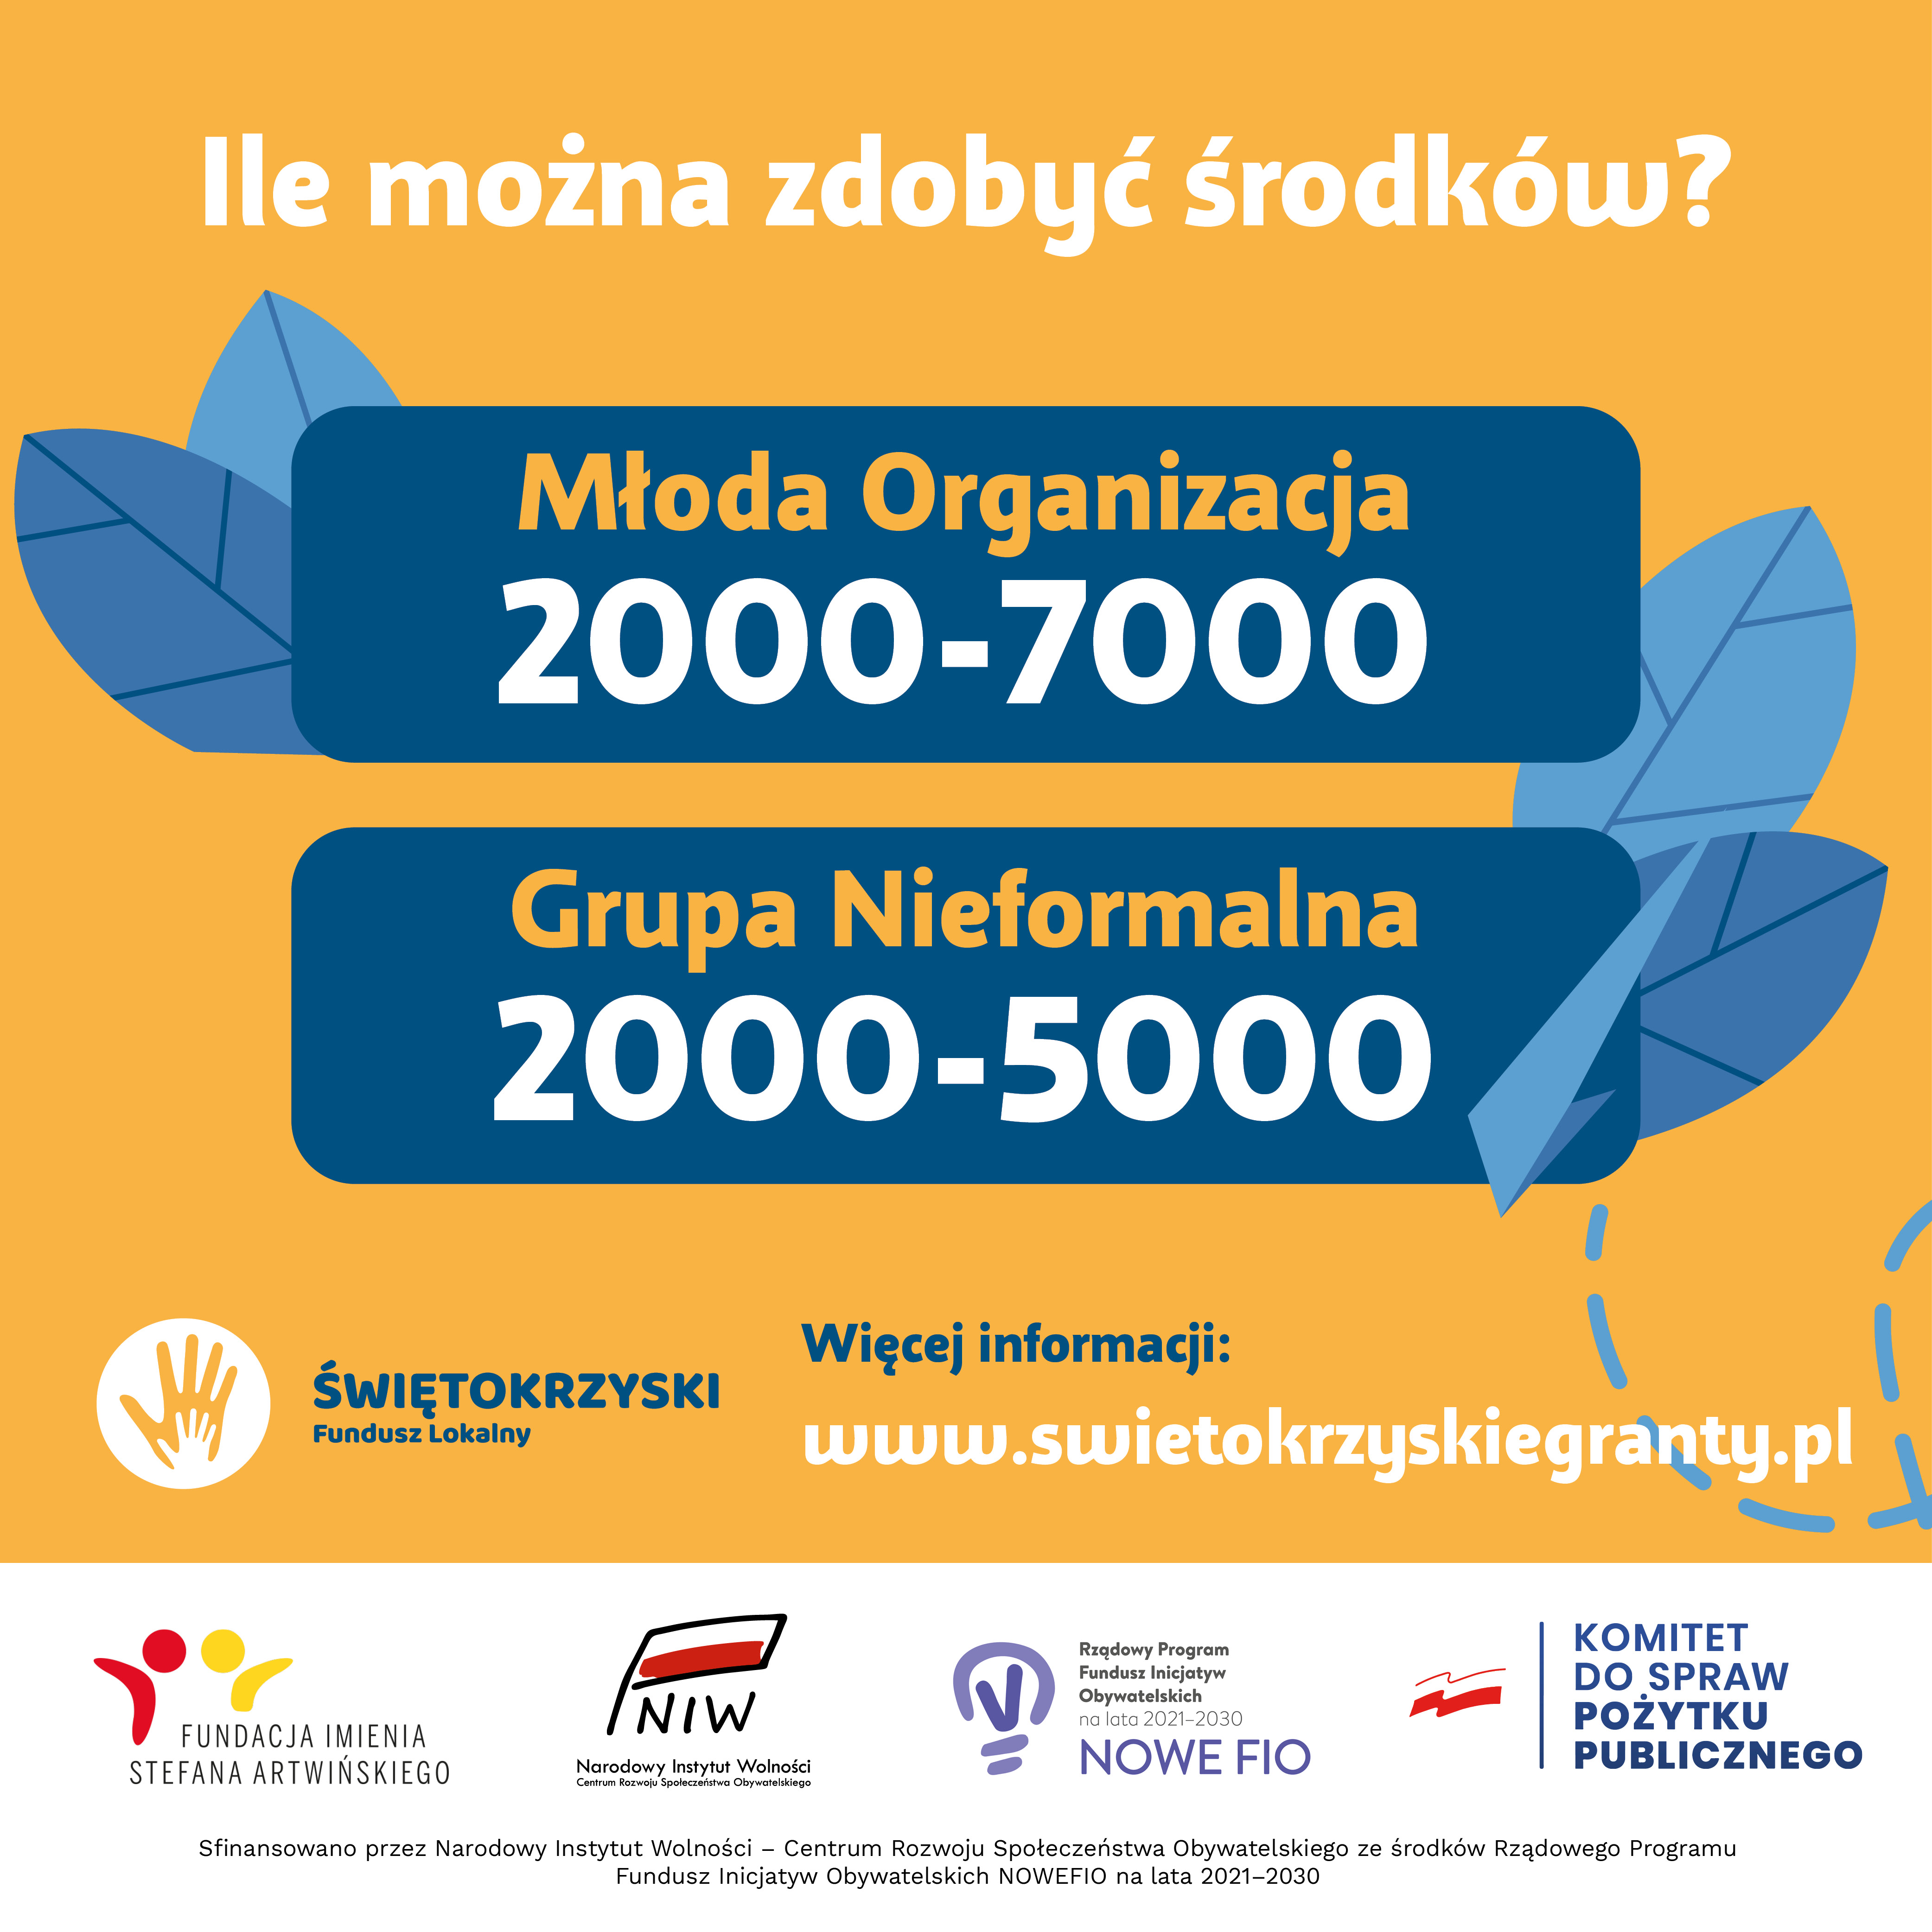 Plakat informacyjny: Wnioski  należy złożyć poprzez generator wniosków on-line dostępny na stronie www.swietokrzyskiegranty.pl od 7 do 31 marca 2022 roku do godziny 23:59.